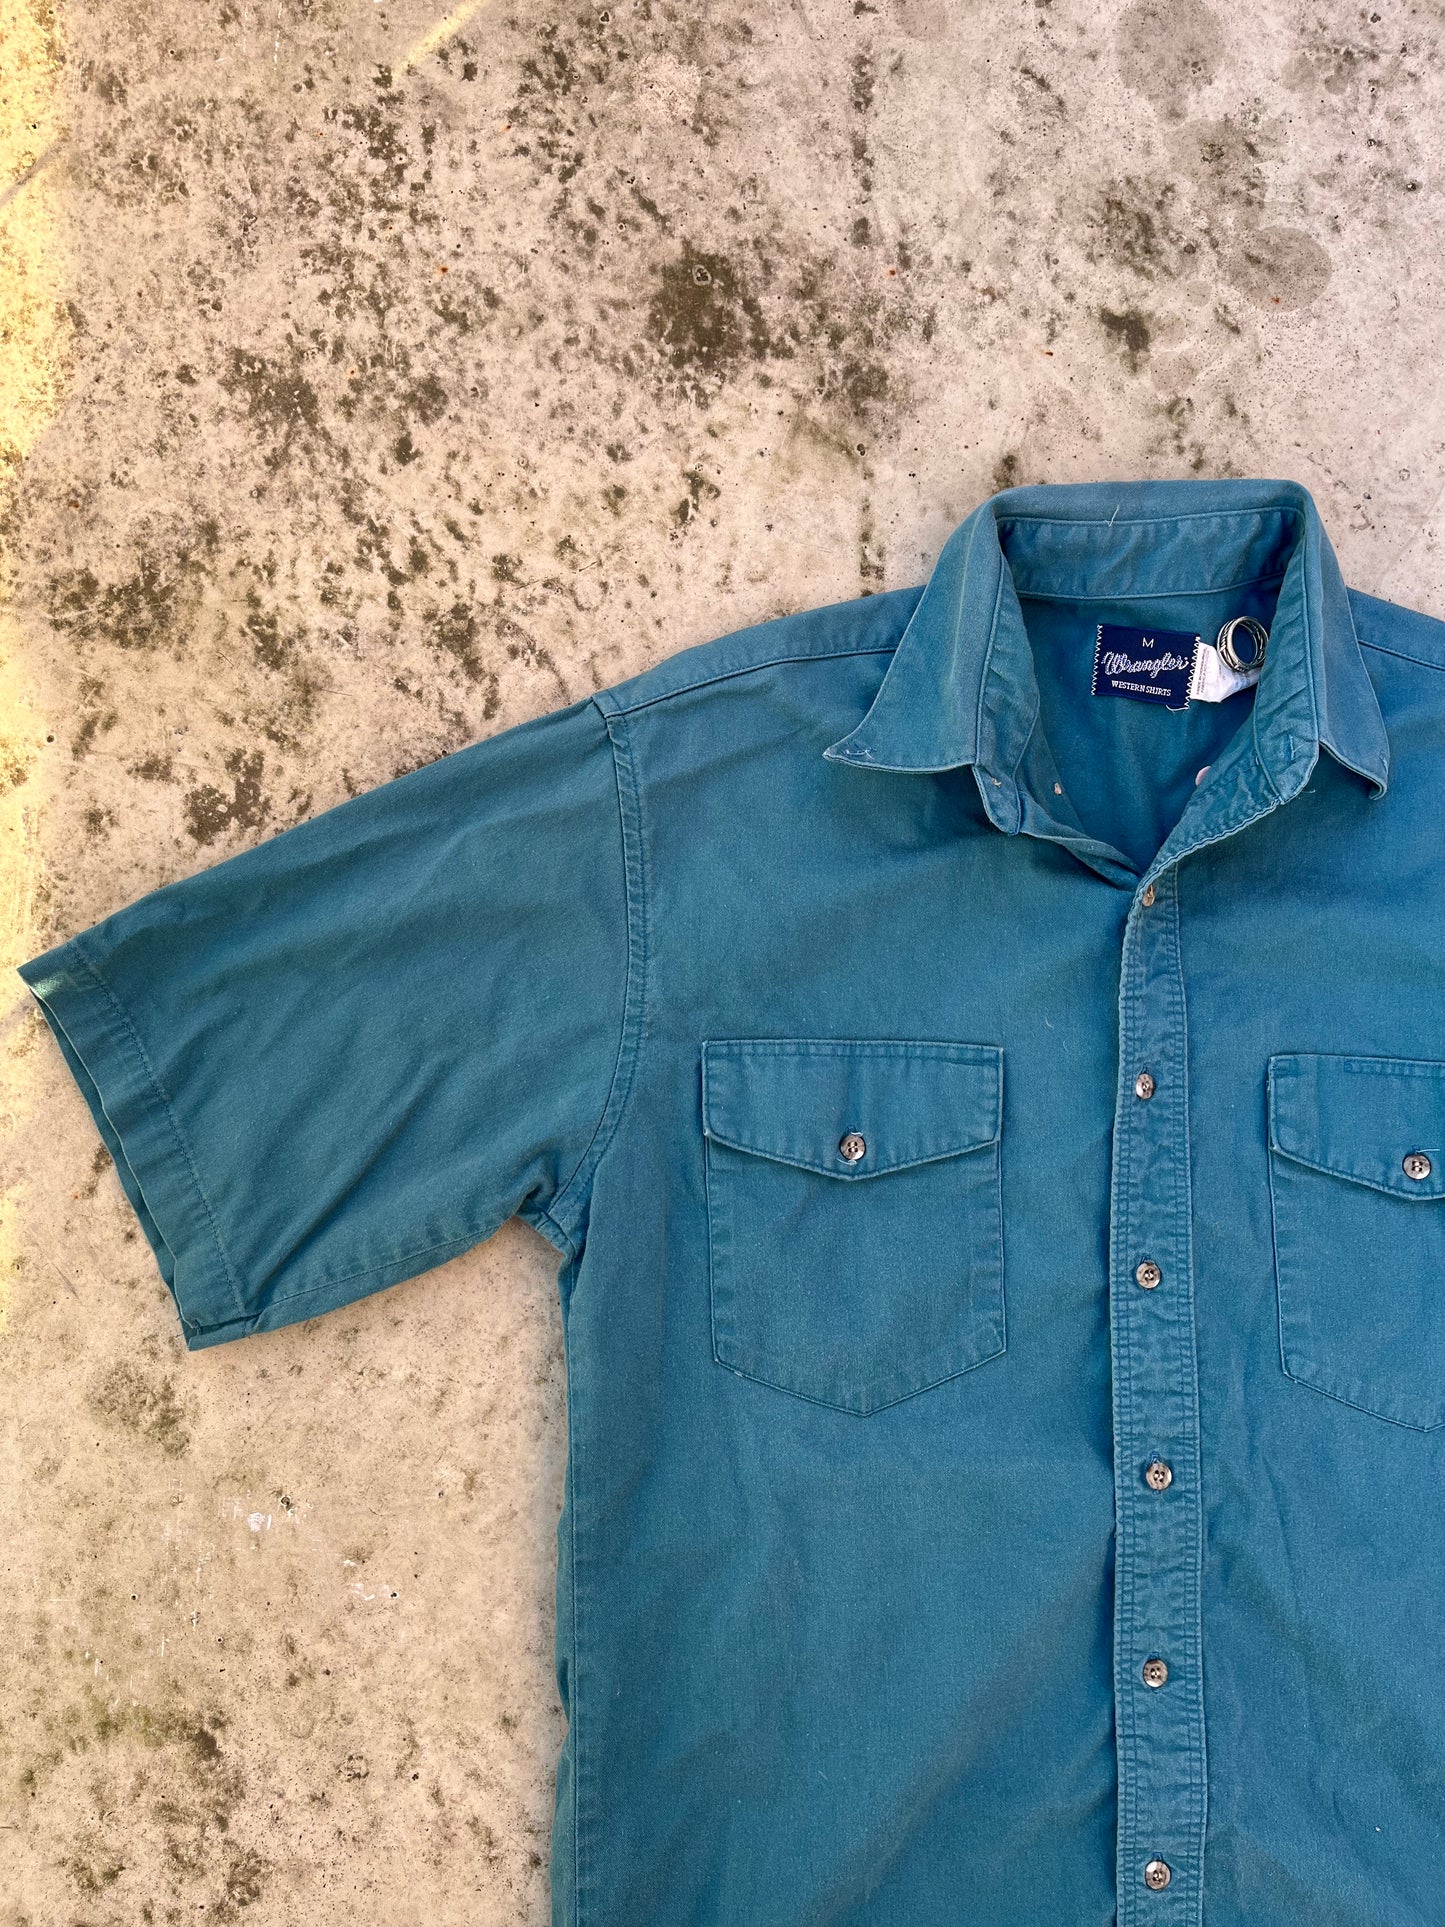 Vintage 80’s Wrangler Shirt